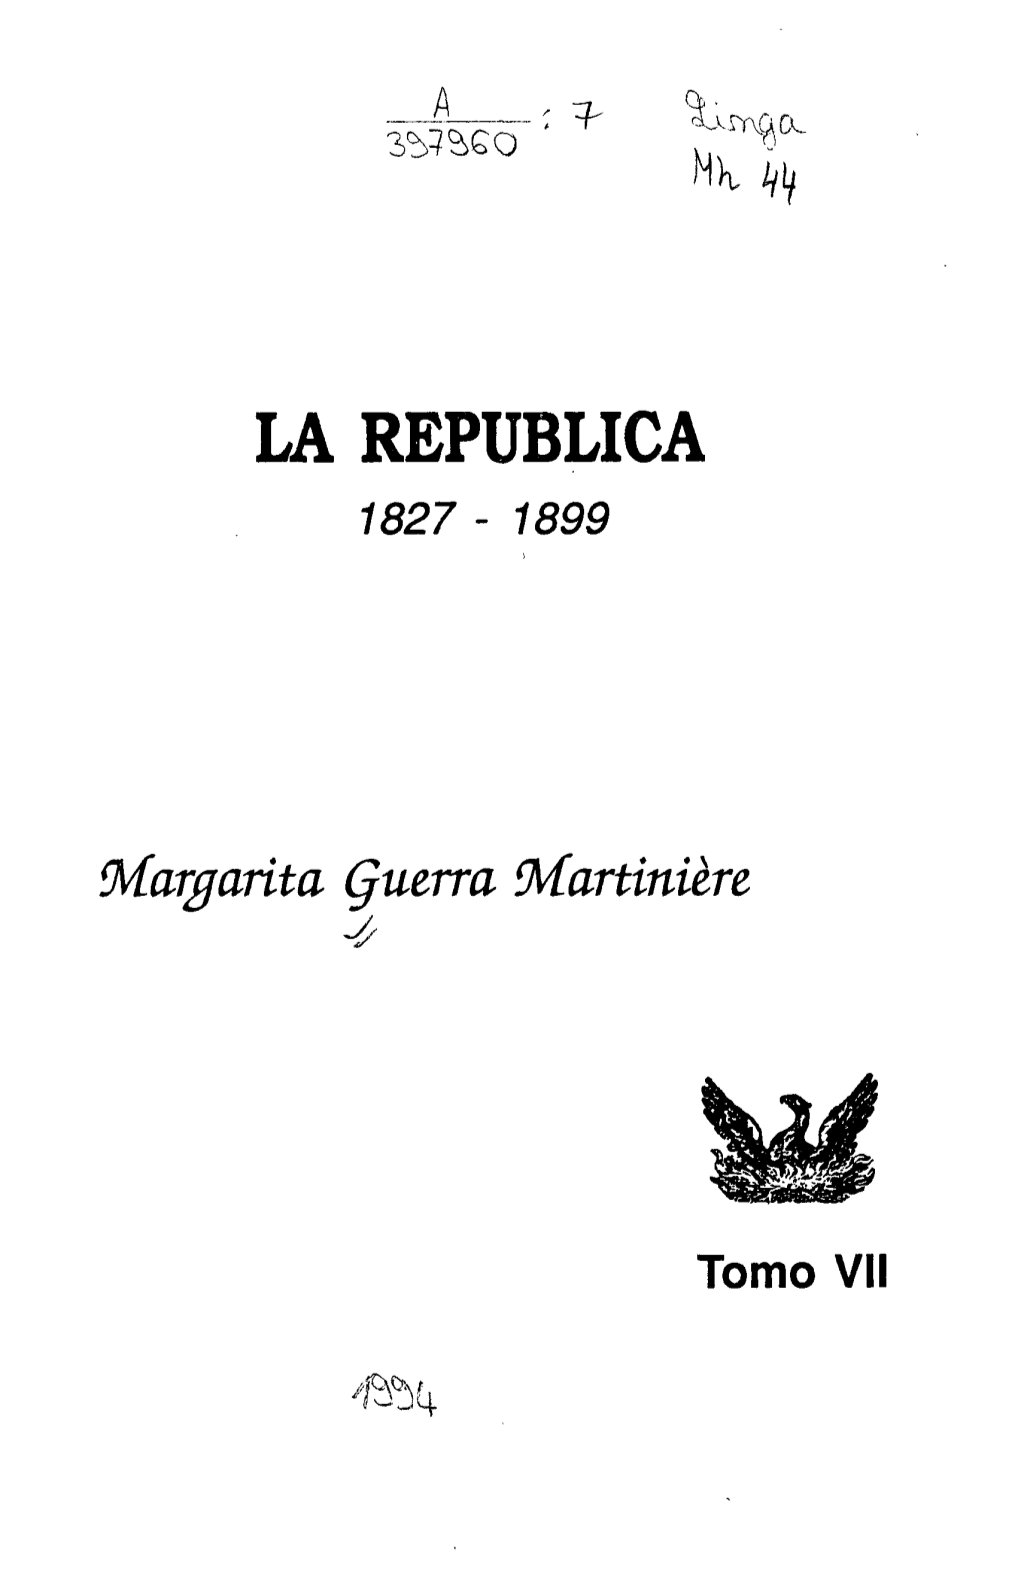 La República - 1899